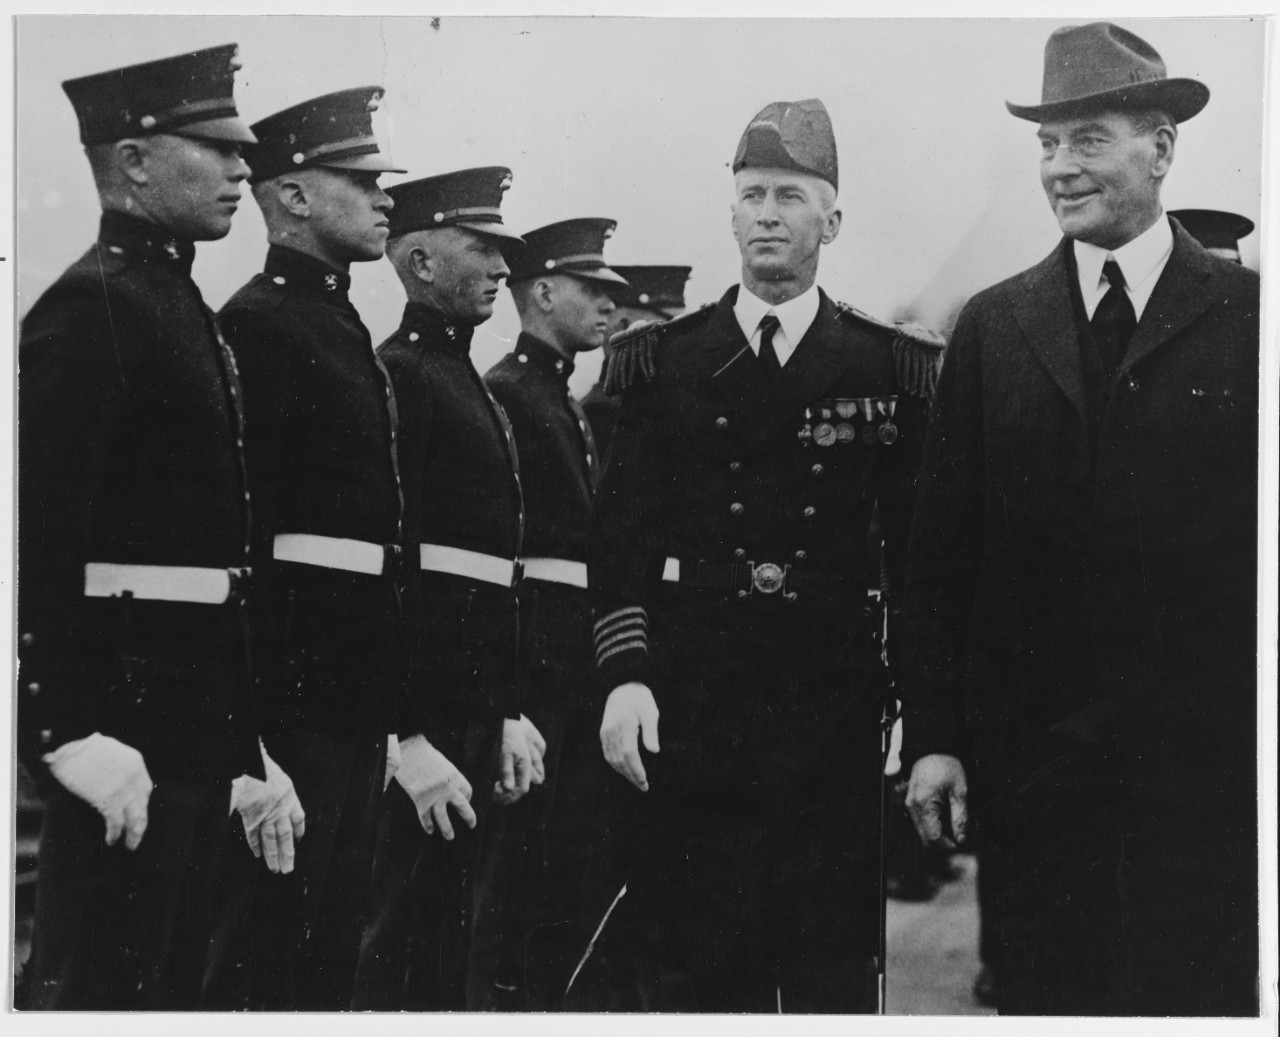 Captain Ernest J. King, USN